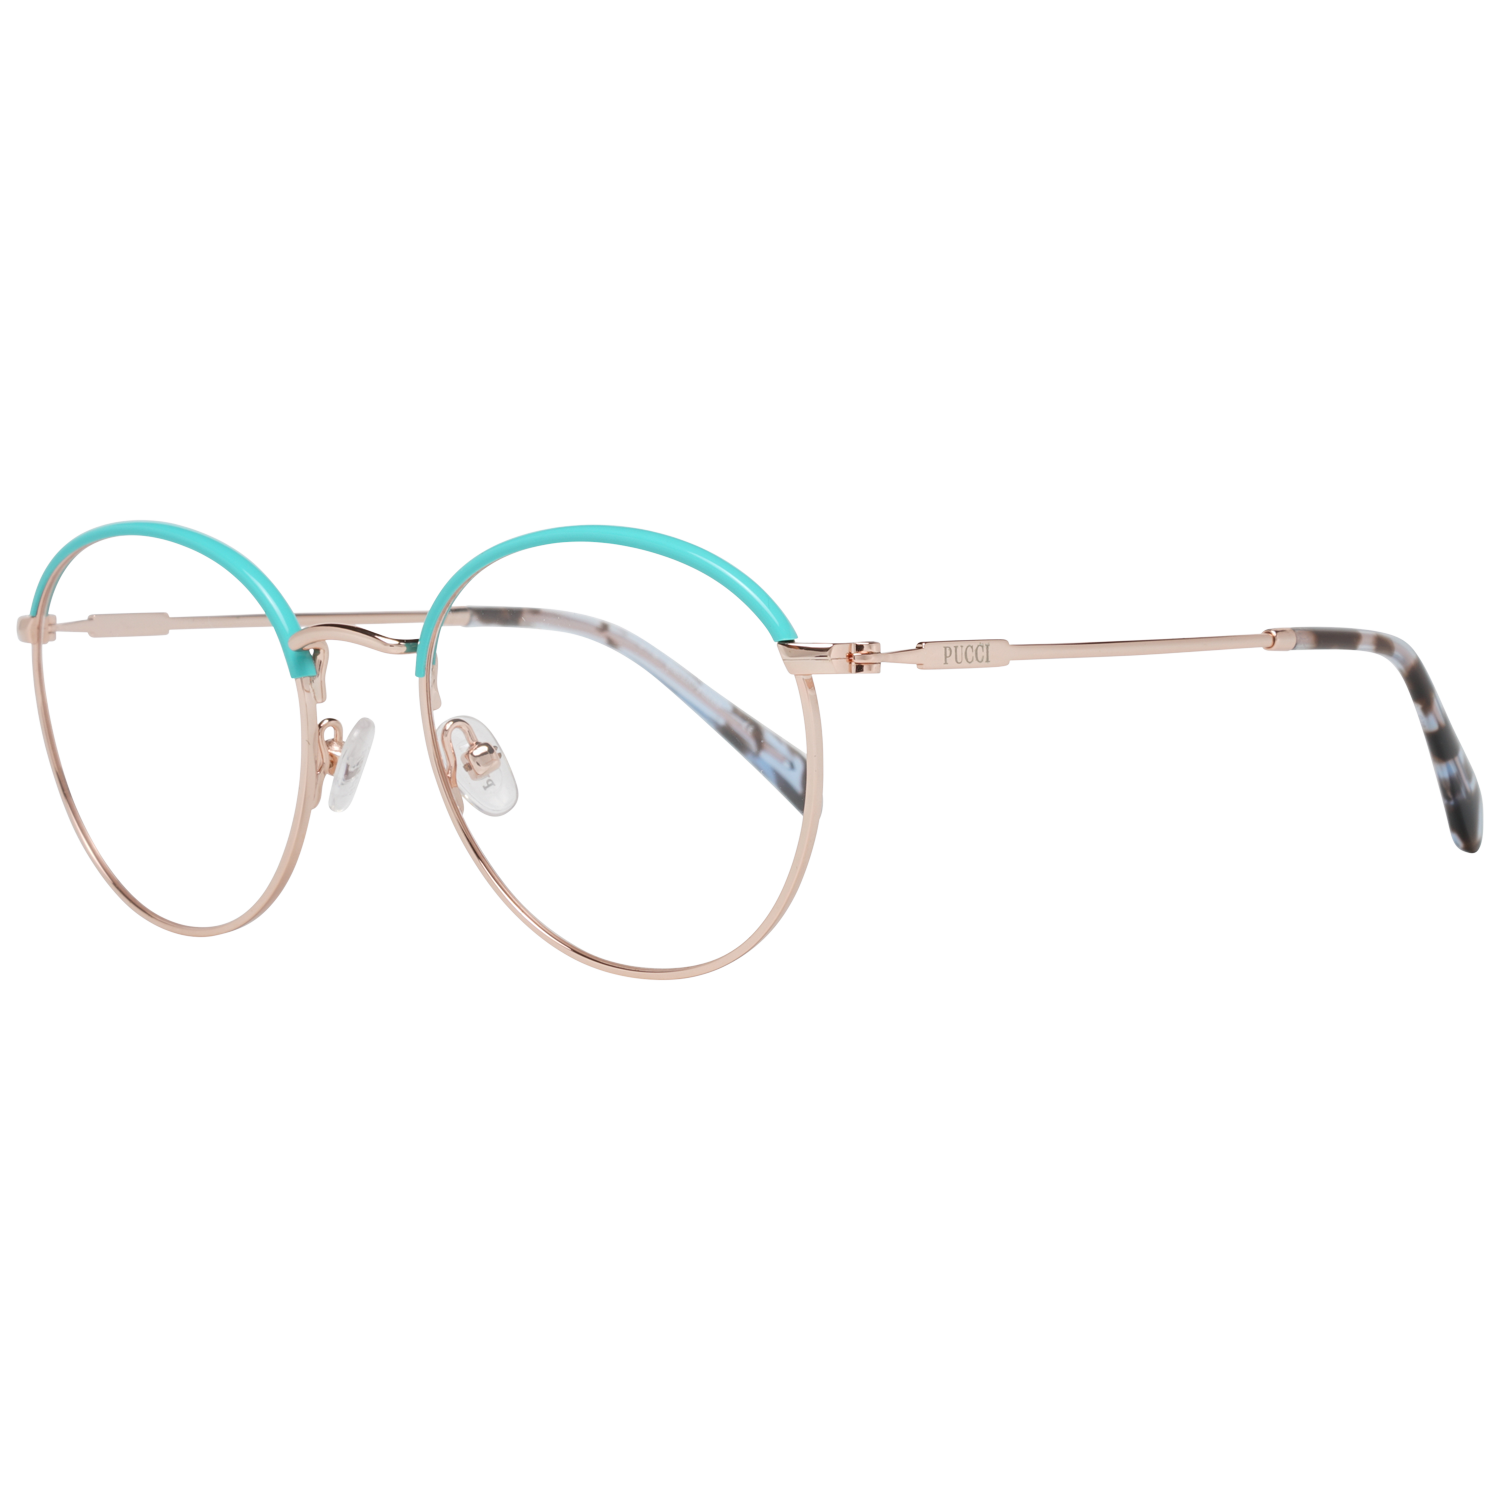 Emilio Pucci Frames Emilio Pucci Optical Frame EP5153 028 51 Eyeglasses Eyewear UK USA Australia 